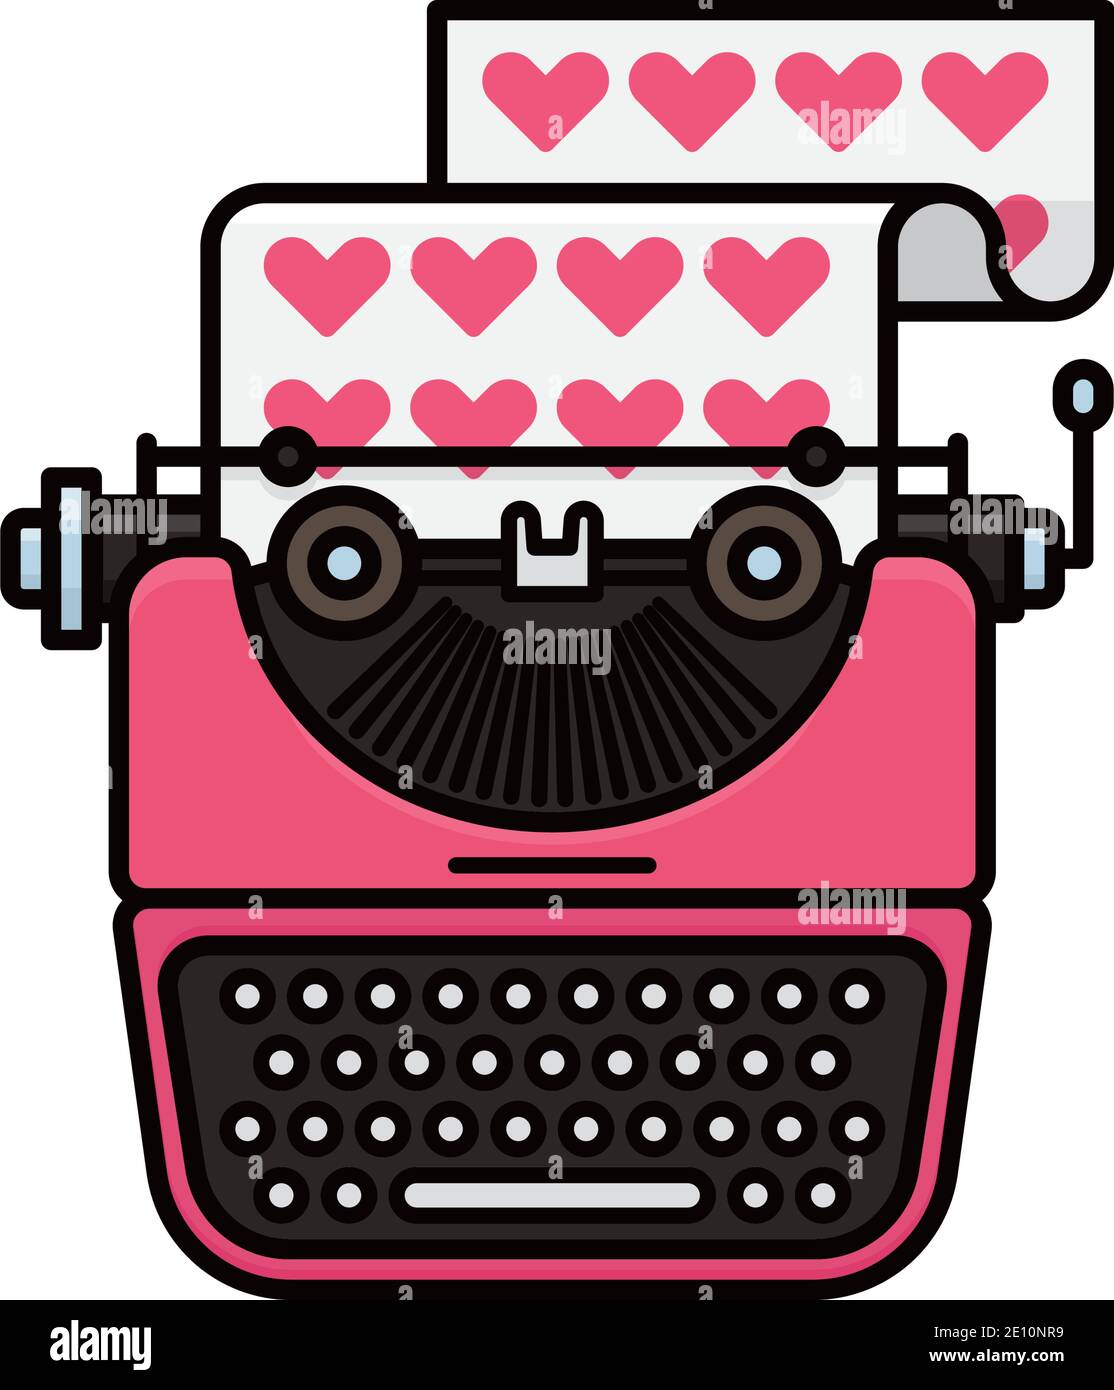 Vintage rosa Schreibmaschine Eingabe einer liebenswürdiger oder valentines Tag Grüße Isolierte Vektordarstellung Stock Vektor